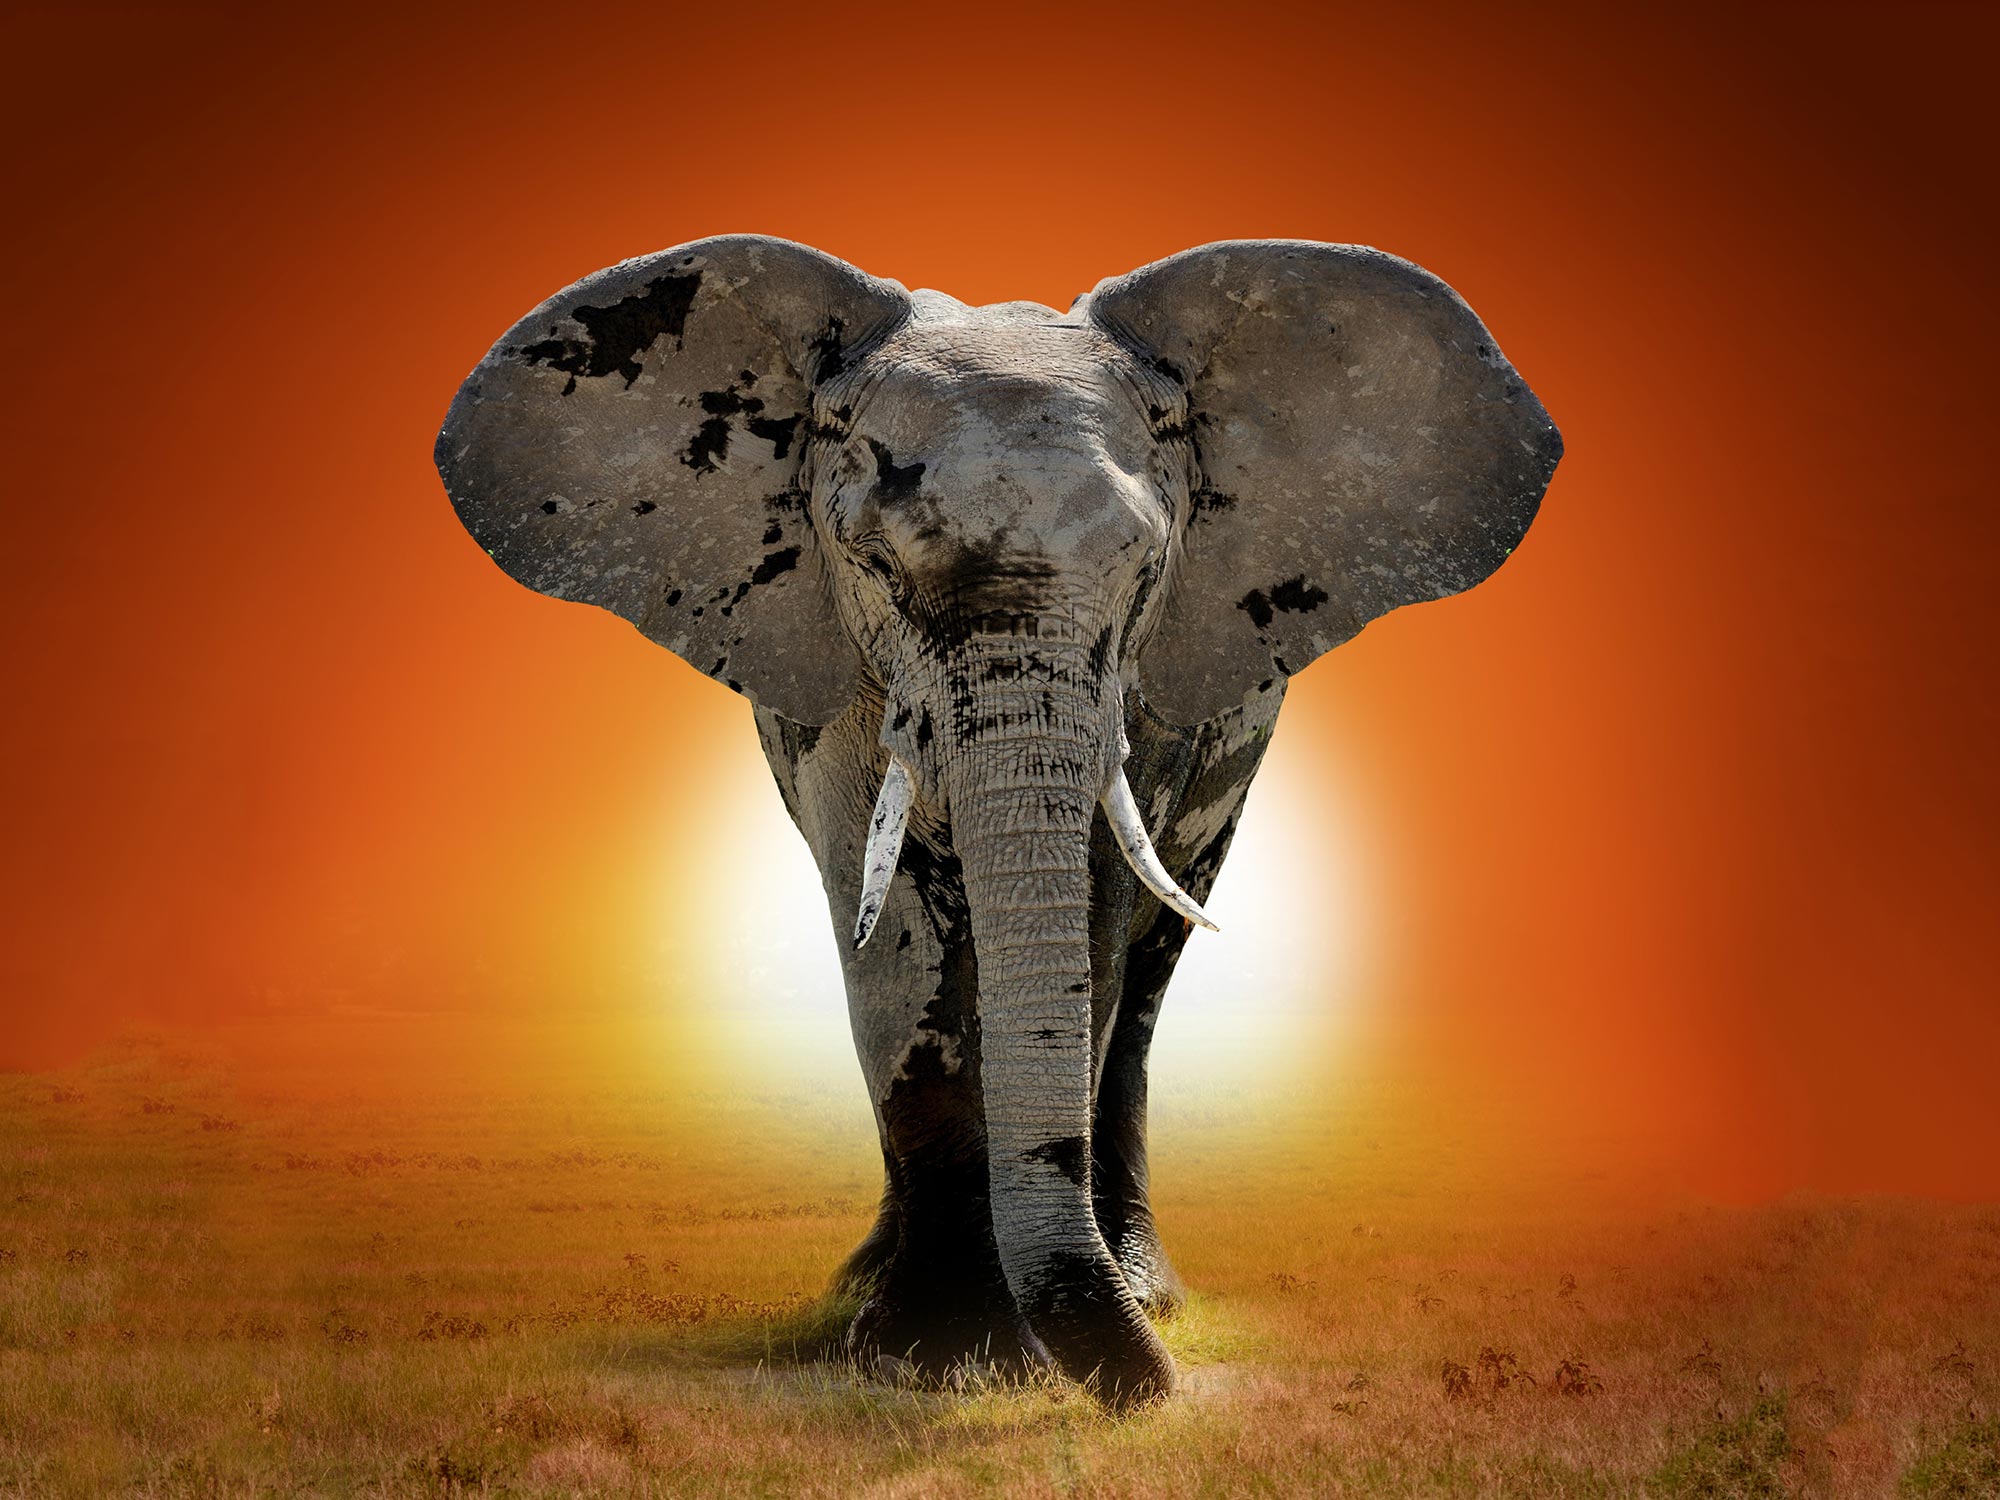 Les éléphants peuvent-ils sauver la planète ?  Ces animaux majestueux sont essentiels pour capturer le carbone atmosphérique